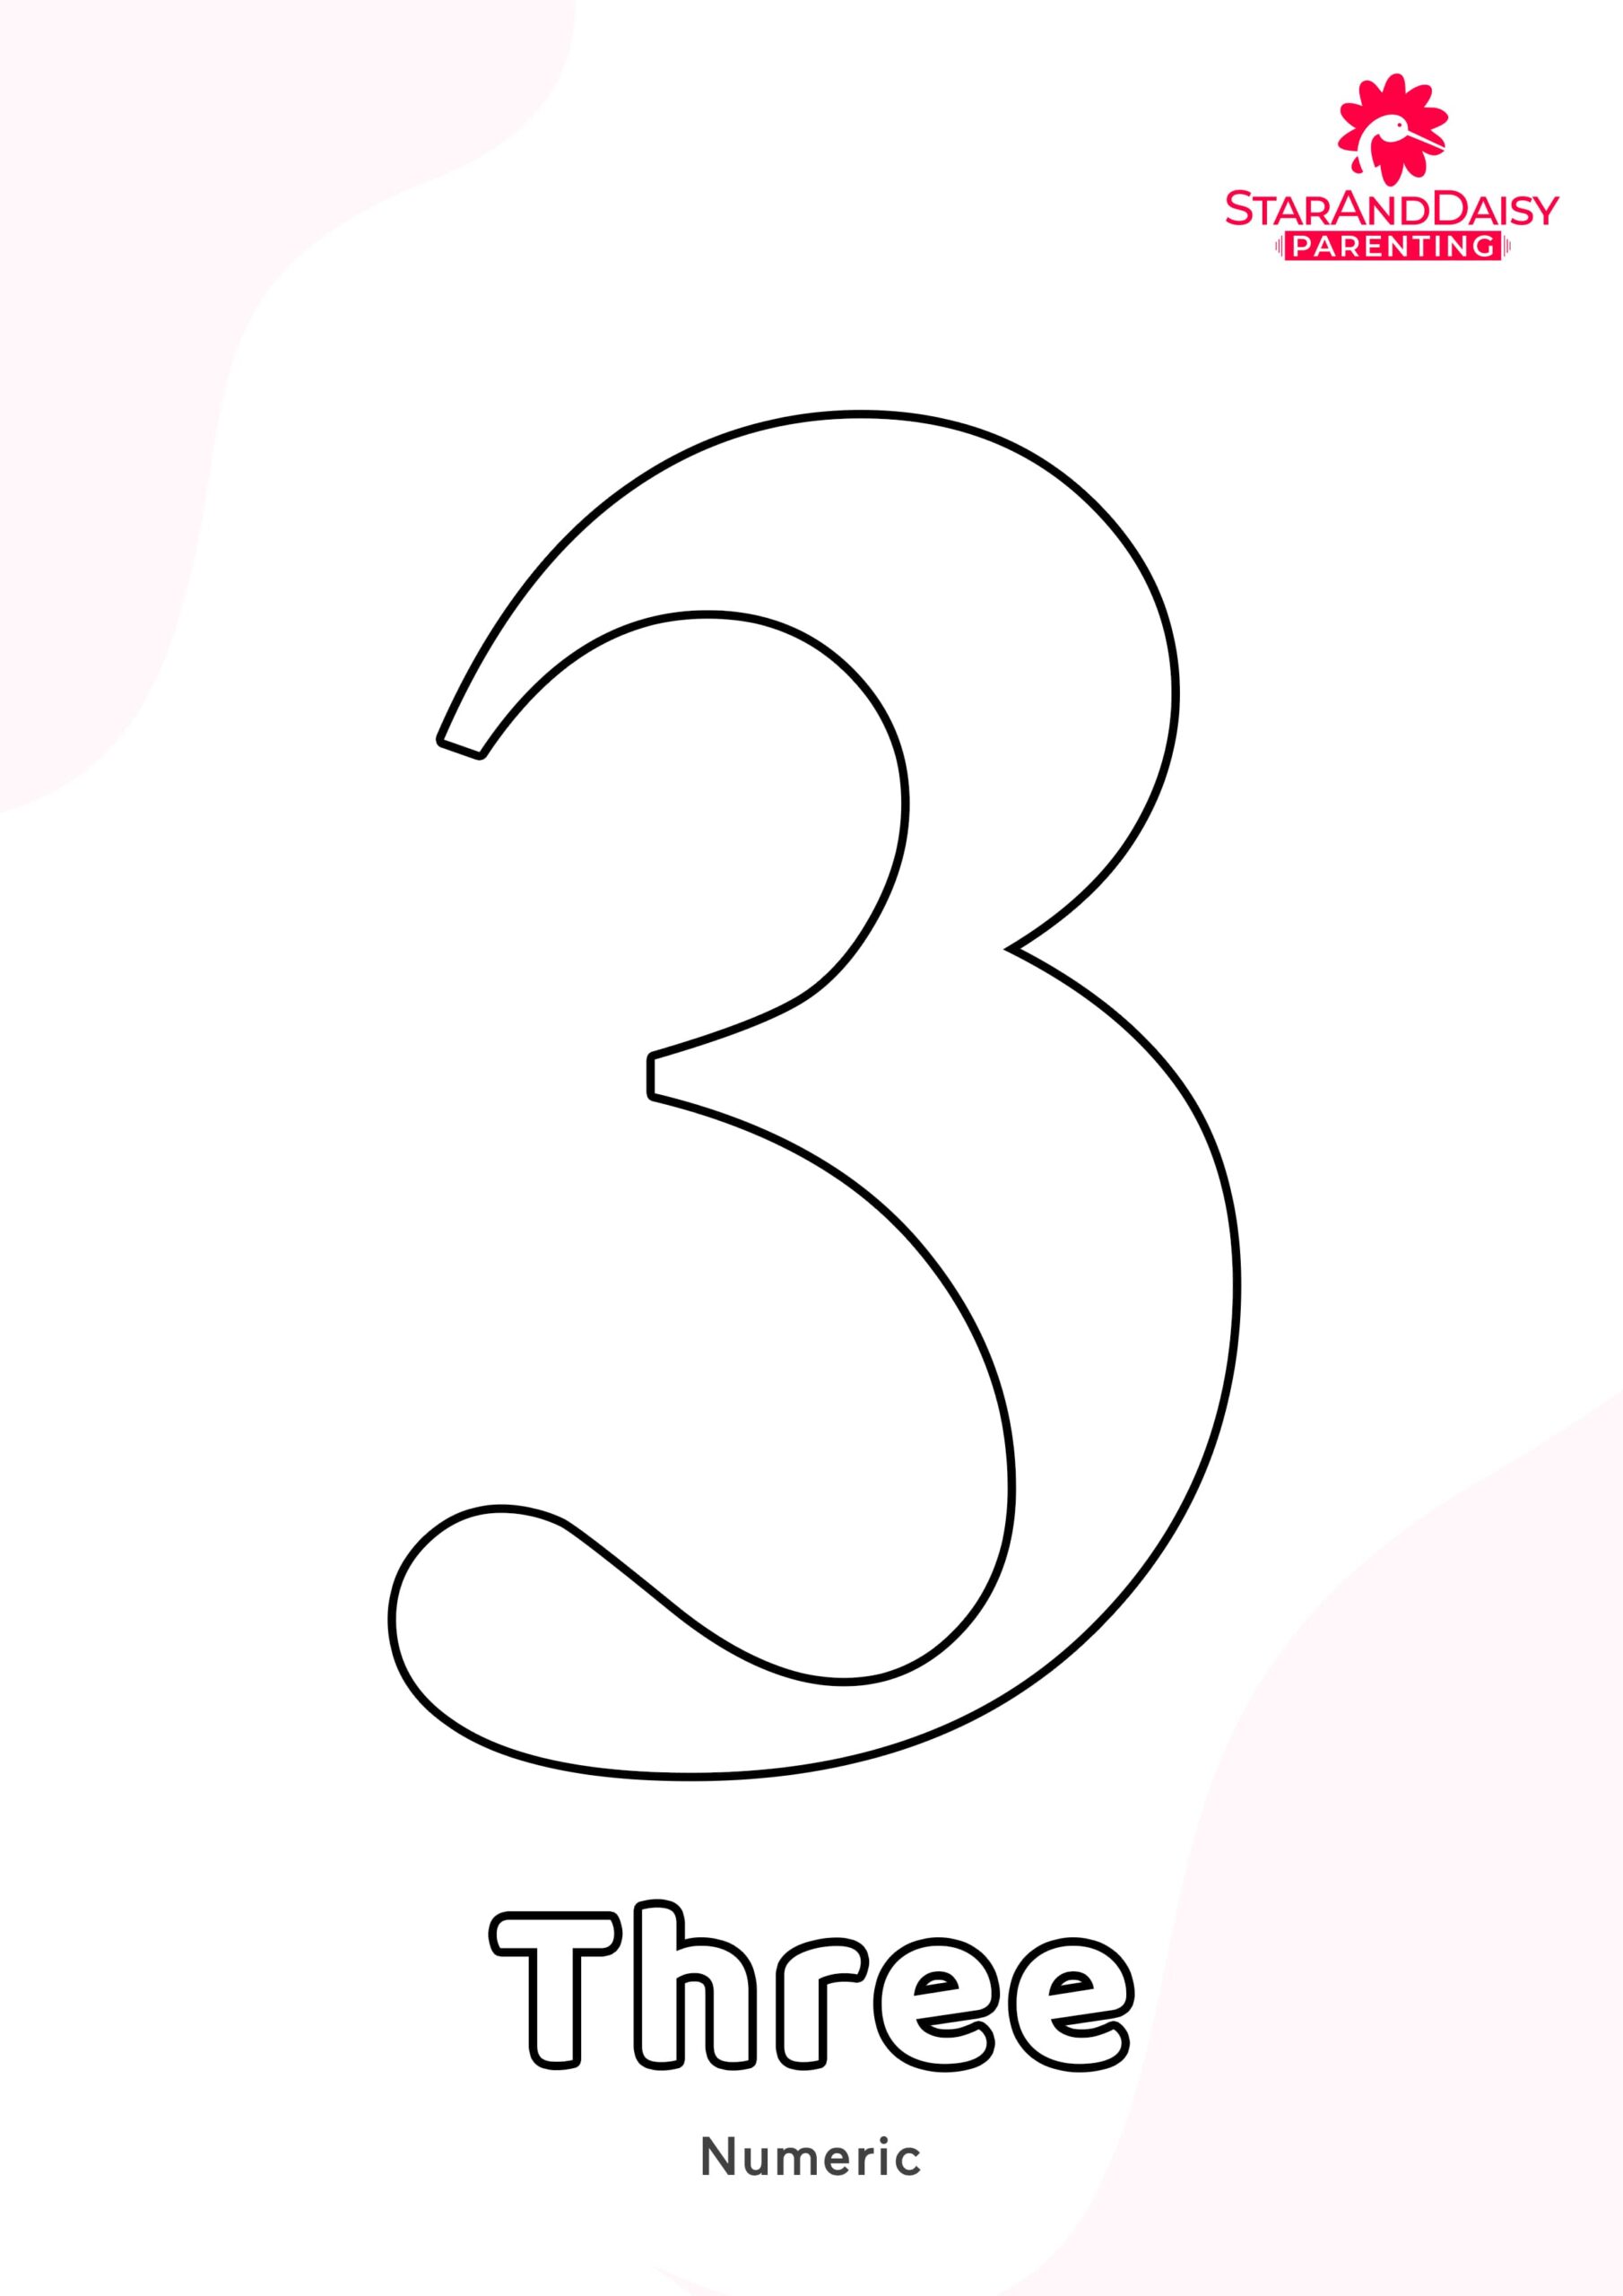 Threee-2